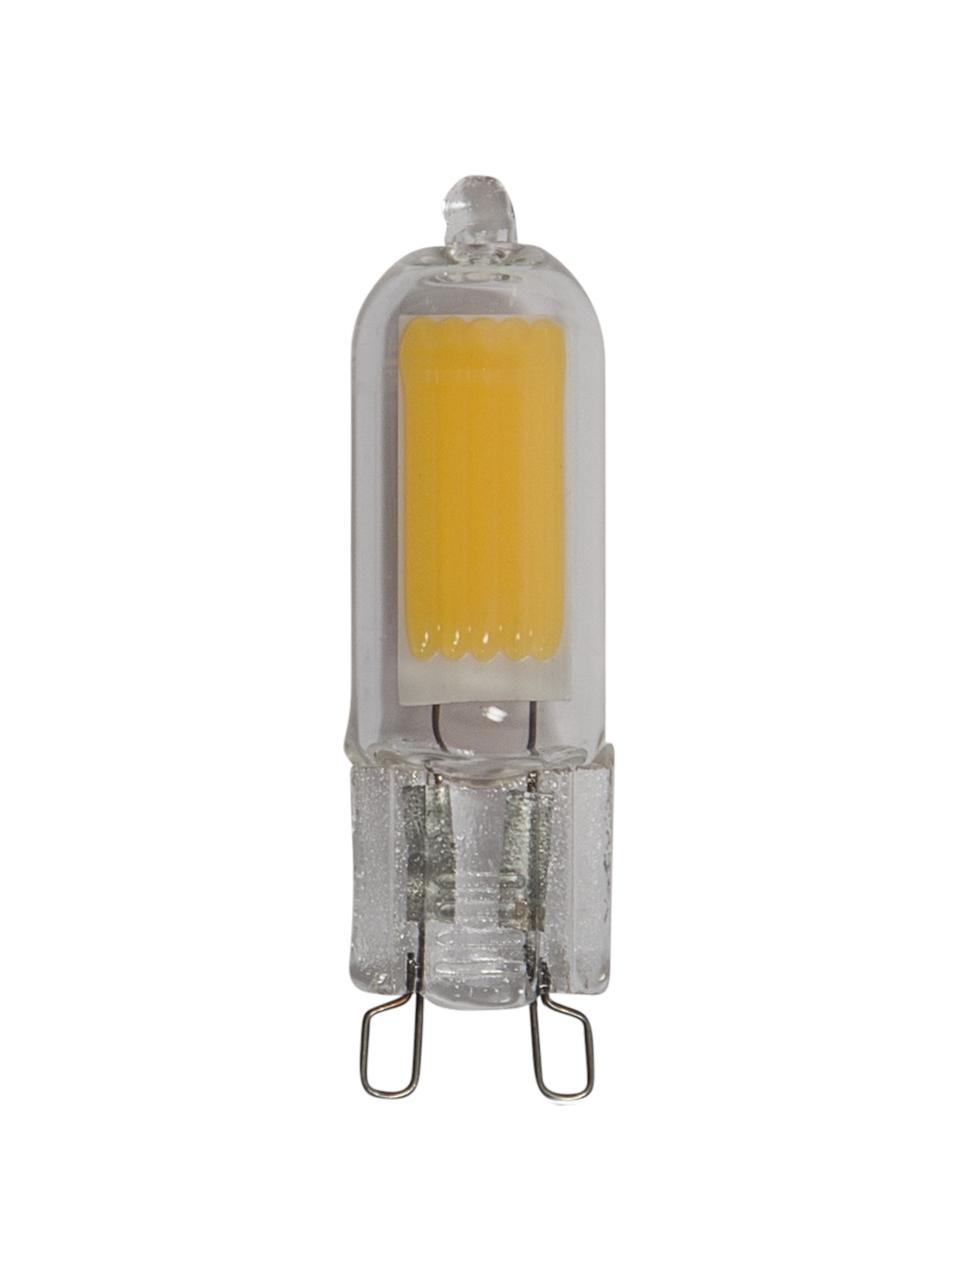 G9 Leuchtmittel, 200lm, warmweiß, 3 Stück, Leuchtmittelschirm: Glas, Leuchtmittelfassung: Glas, Transparent, Ø 1 x H 5 cm